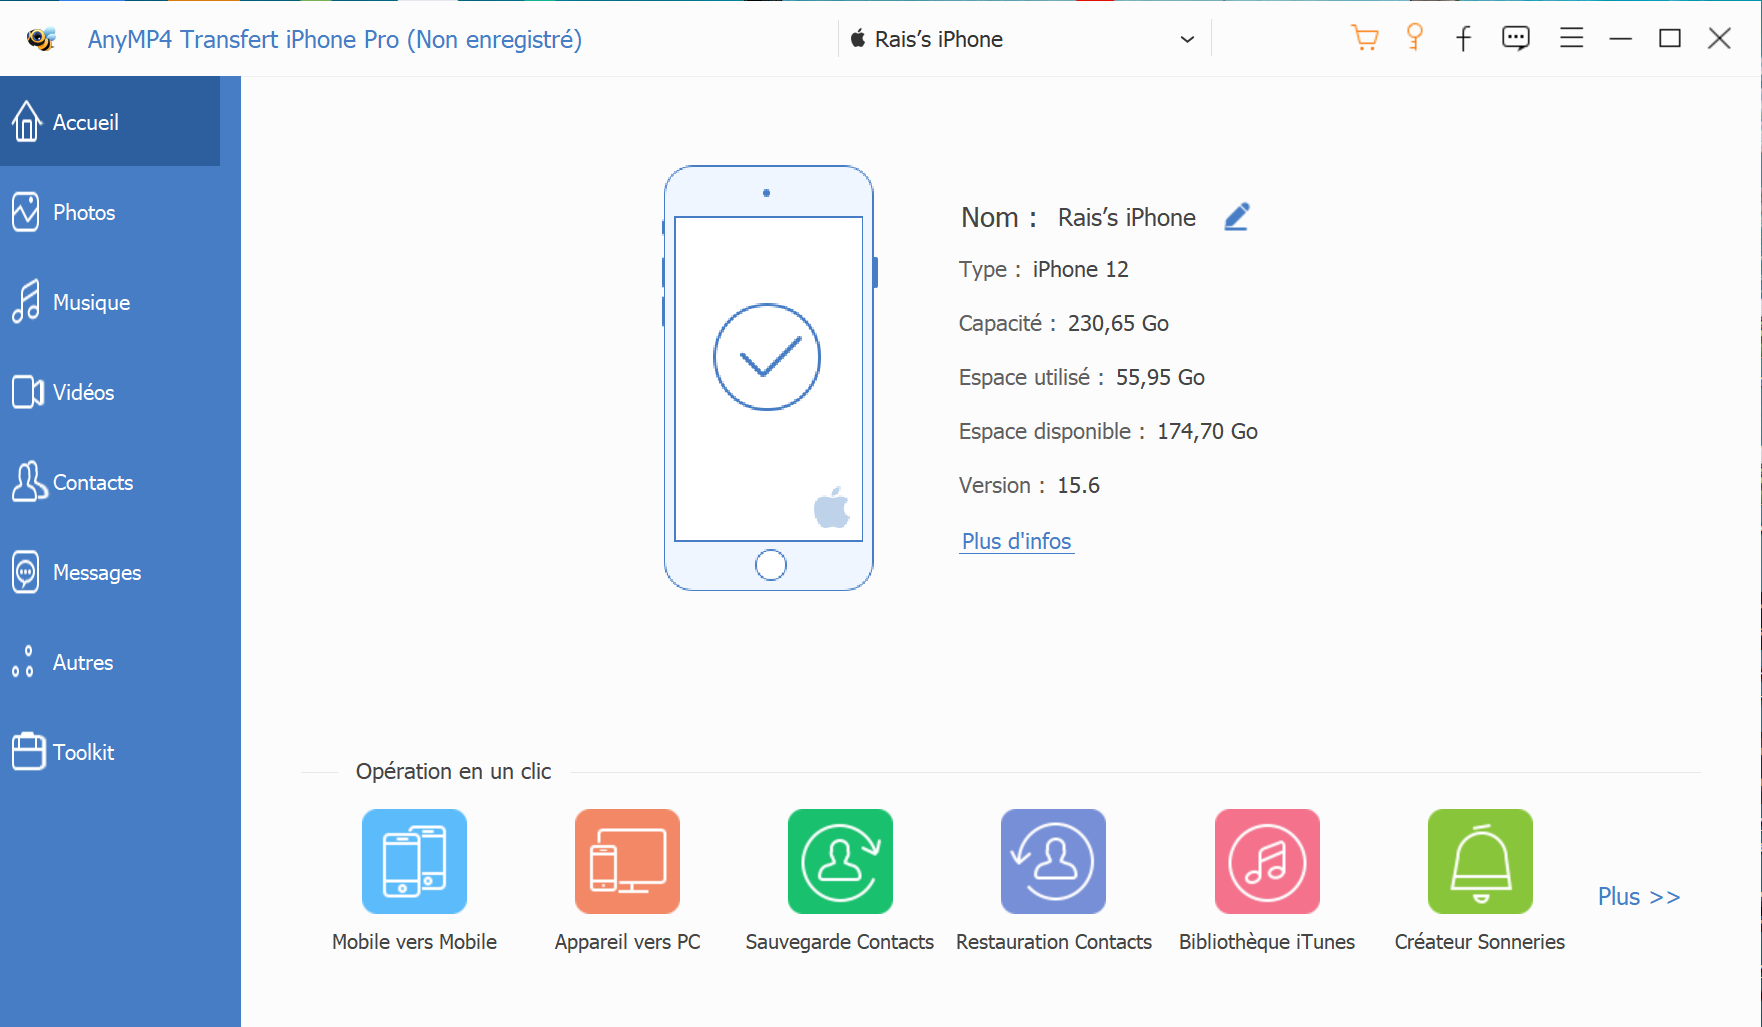 Transférer les données d’un iPhone vers un autre iPhone avec AnyMP4 Transfert iPhone Pro